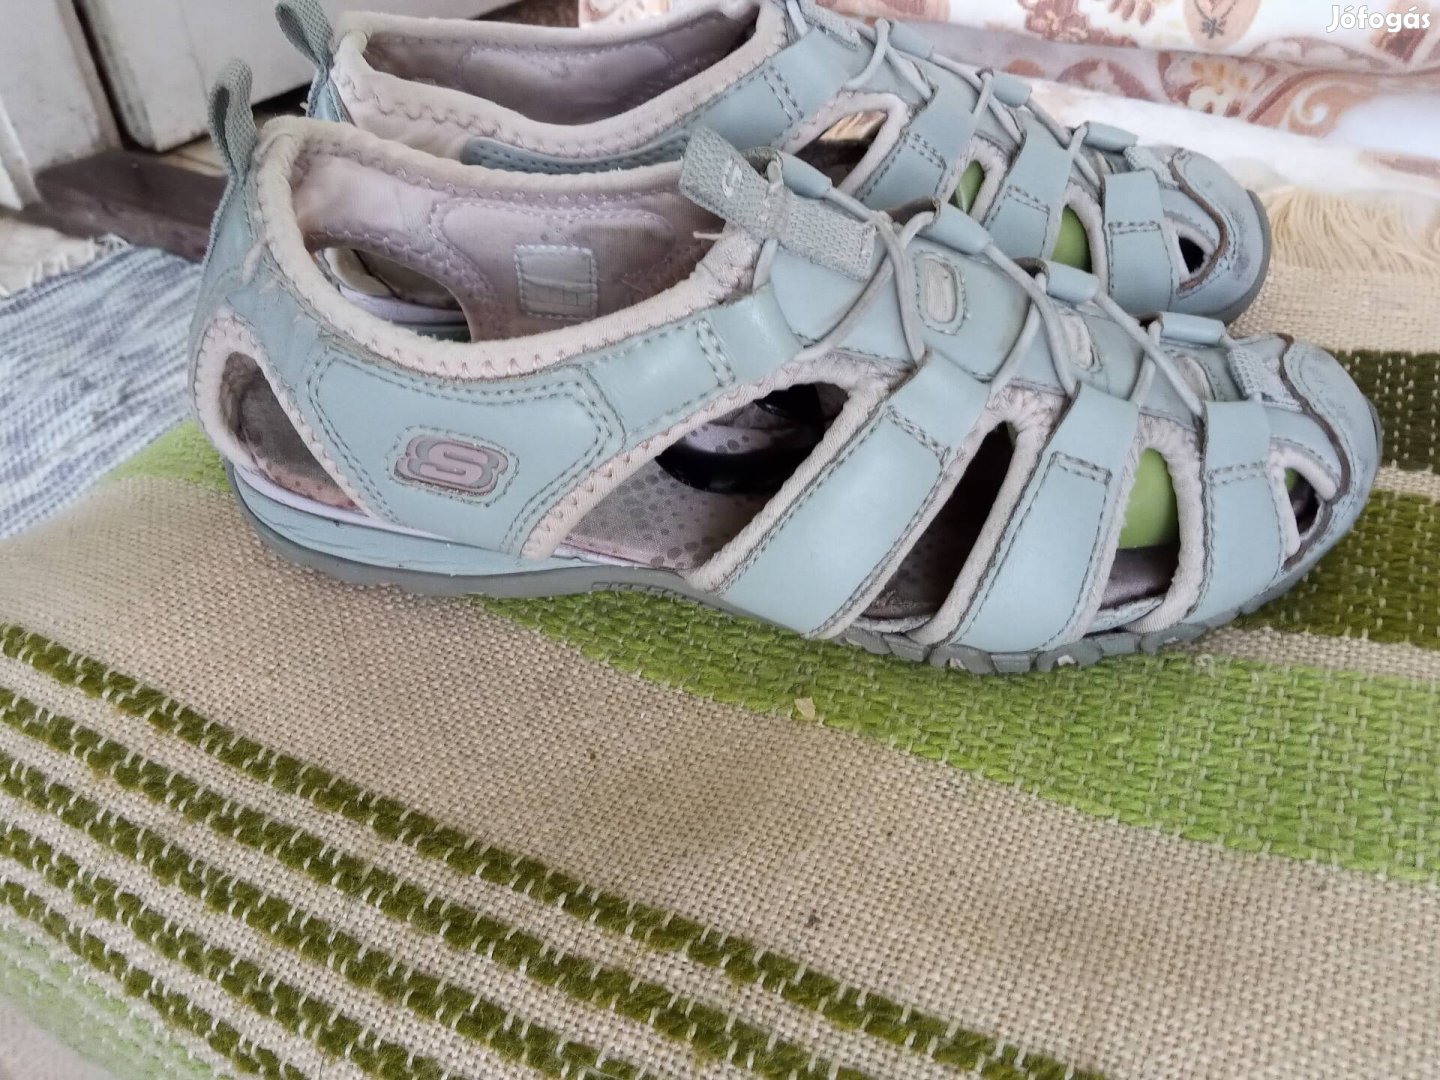 38-as Skechers puha, kényelmes nyári cipő.